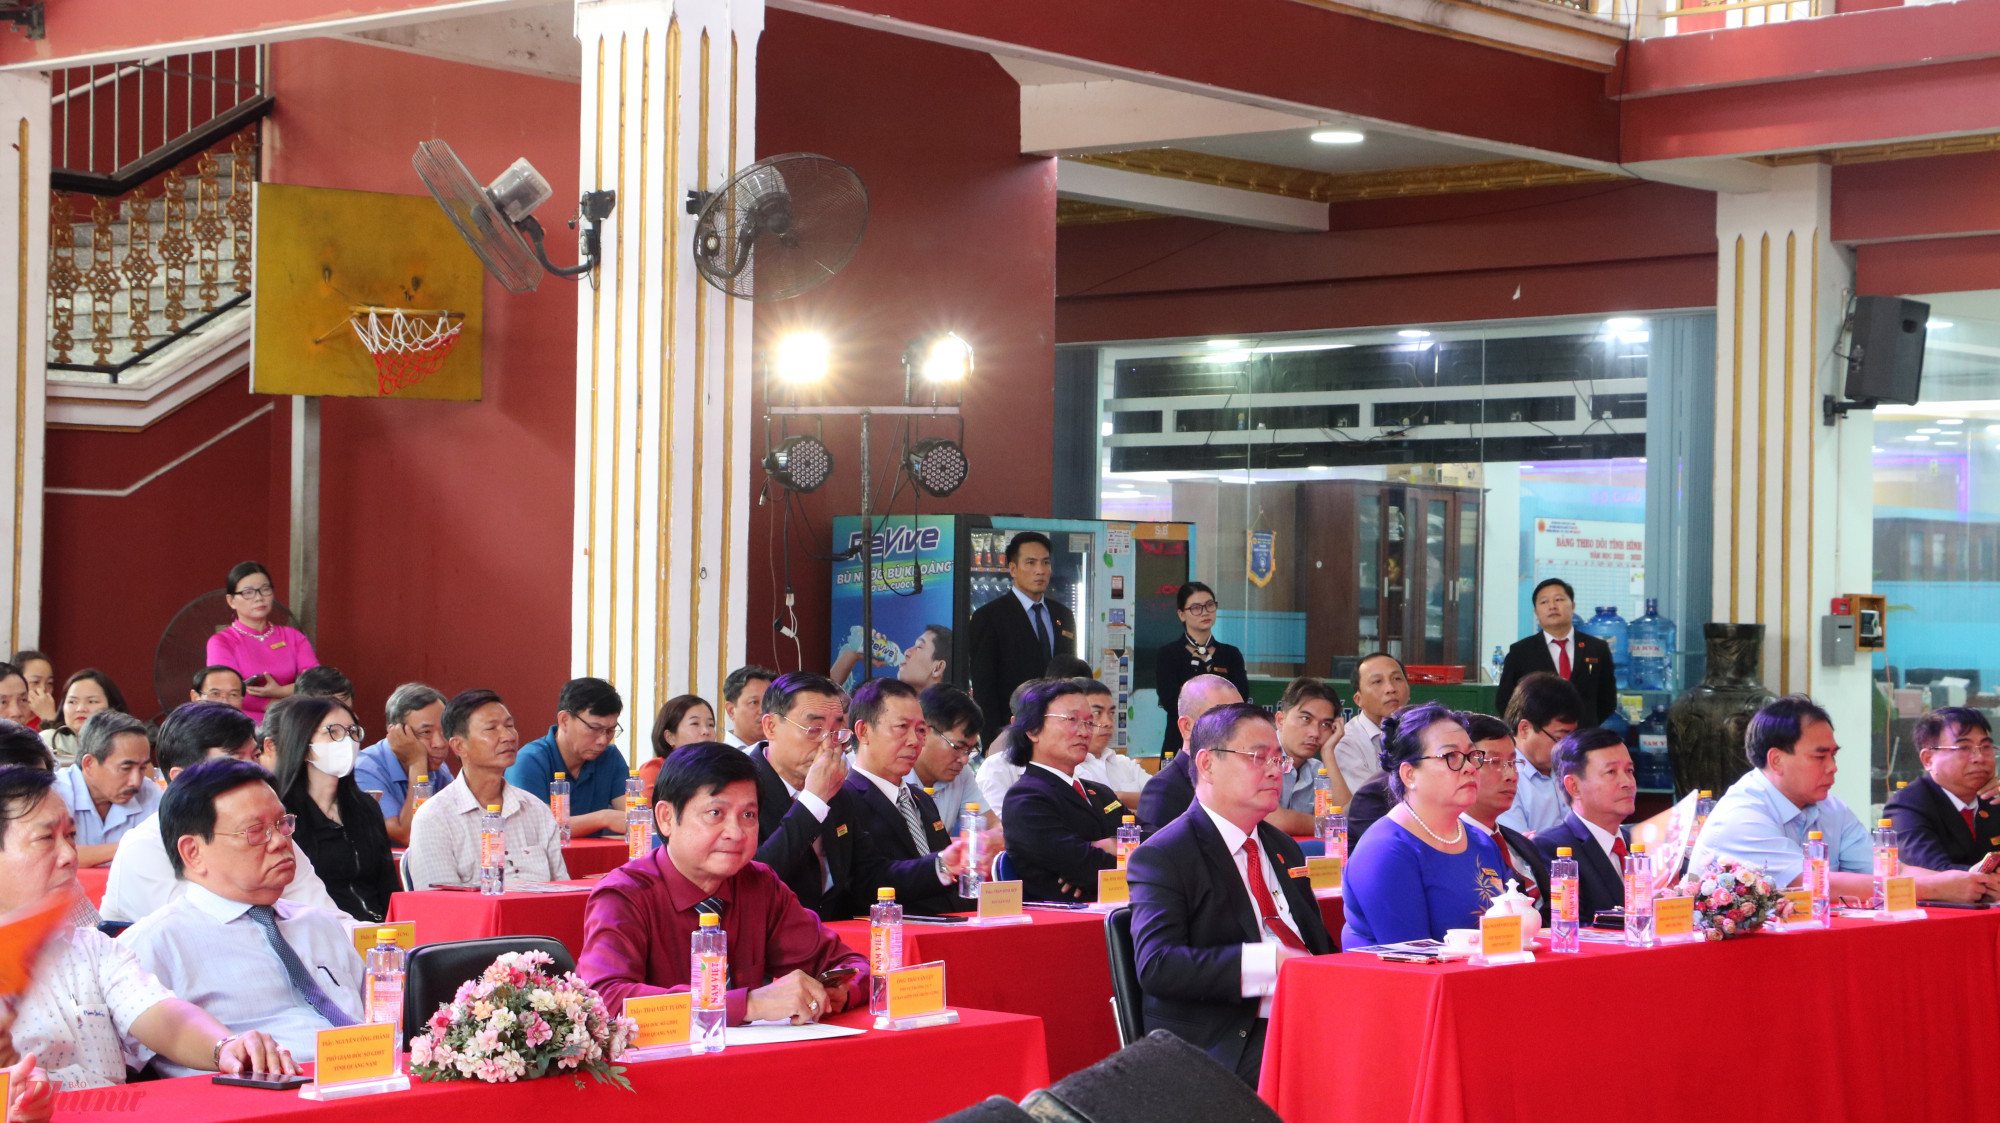 Ngày 27/4, Sở GD-ĐT tỉnh Quảng Nam đã có chuyến thăm, chia sẻ kinh nghiệm giáo dục với Tập đoàn Giáo dục Quốc tế Nam Việt (TPHCM).